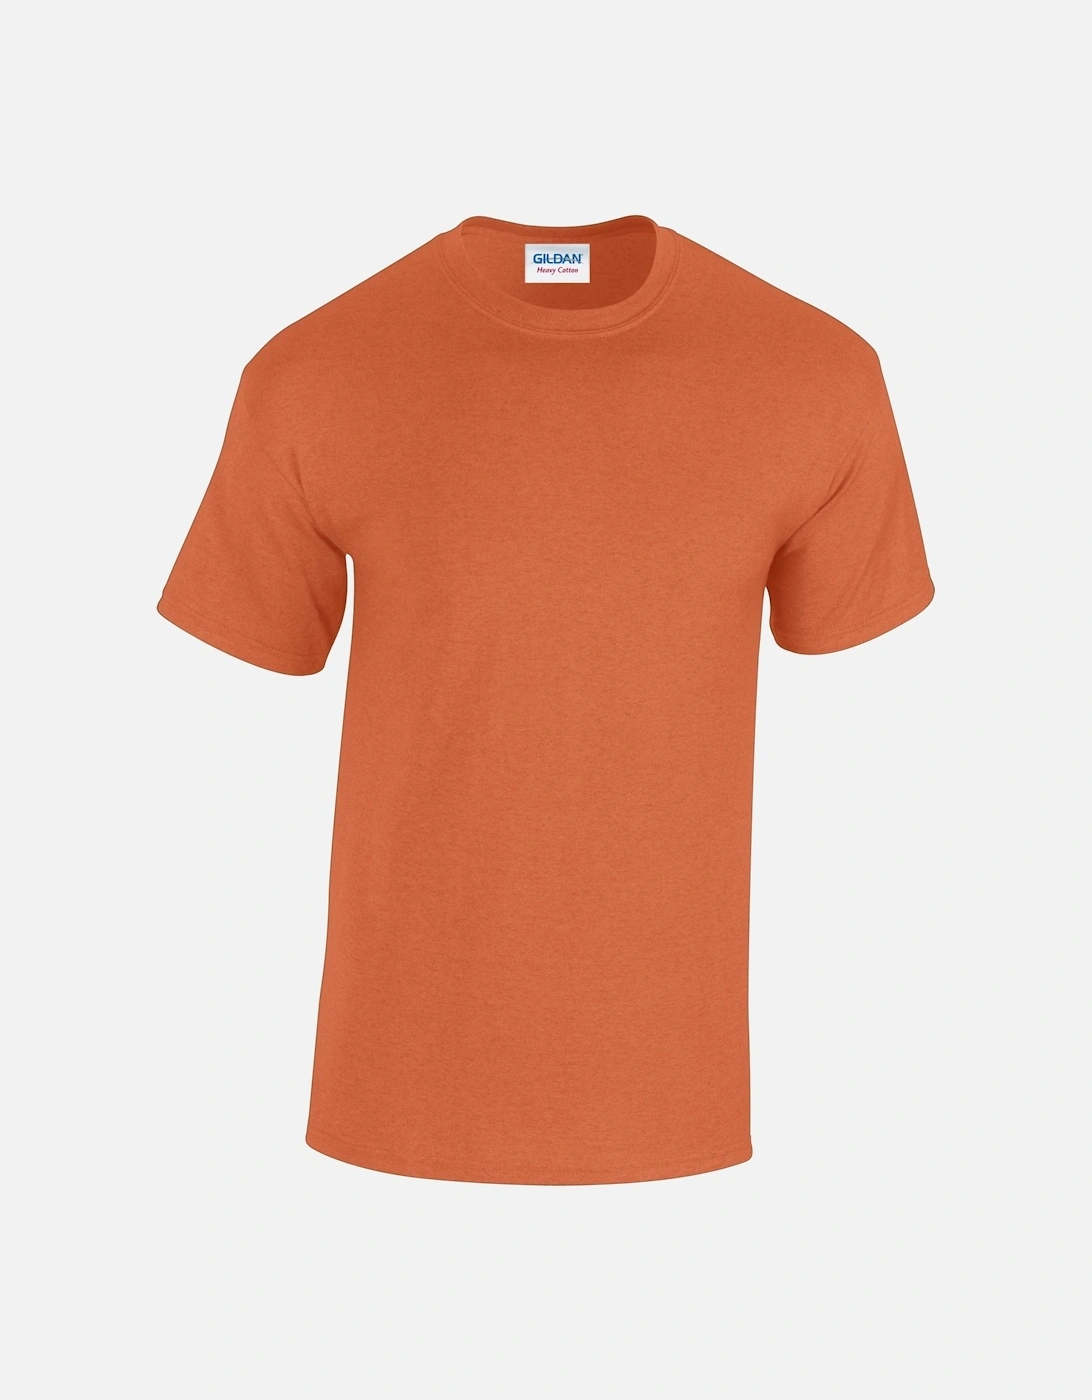 Unisex Adult Plain Cotton Heavy T-Shirt, 6 of 5